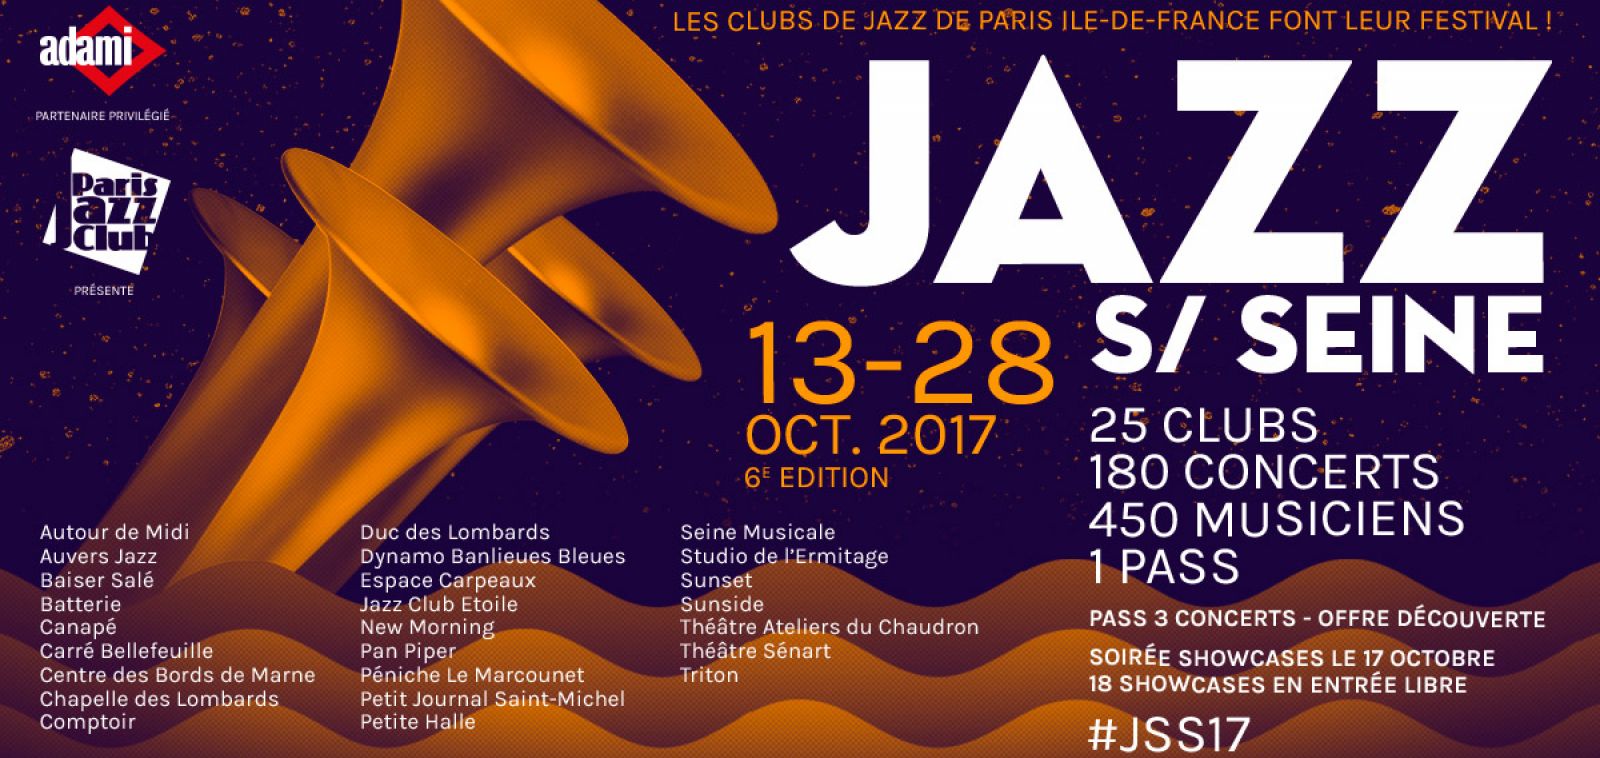 Jazz Sur Seine - Les clubs de jazz de Paris & Ile-de-France font leur festival !